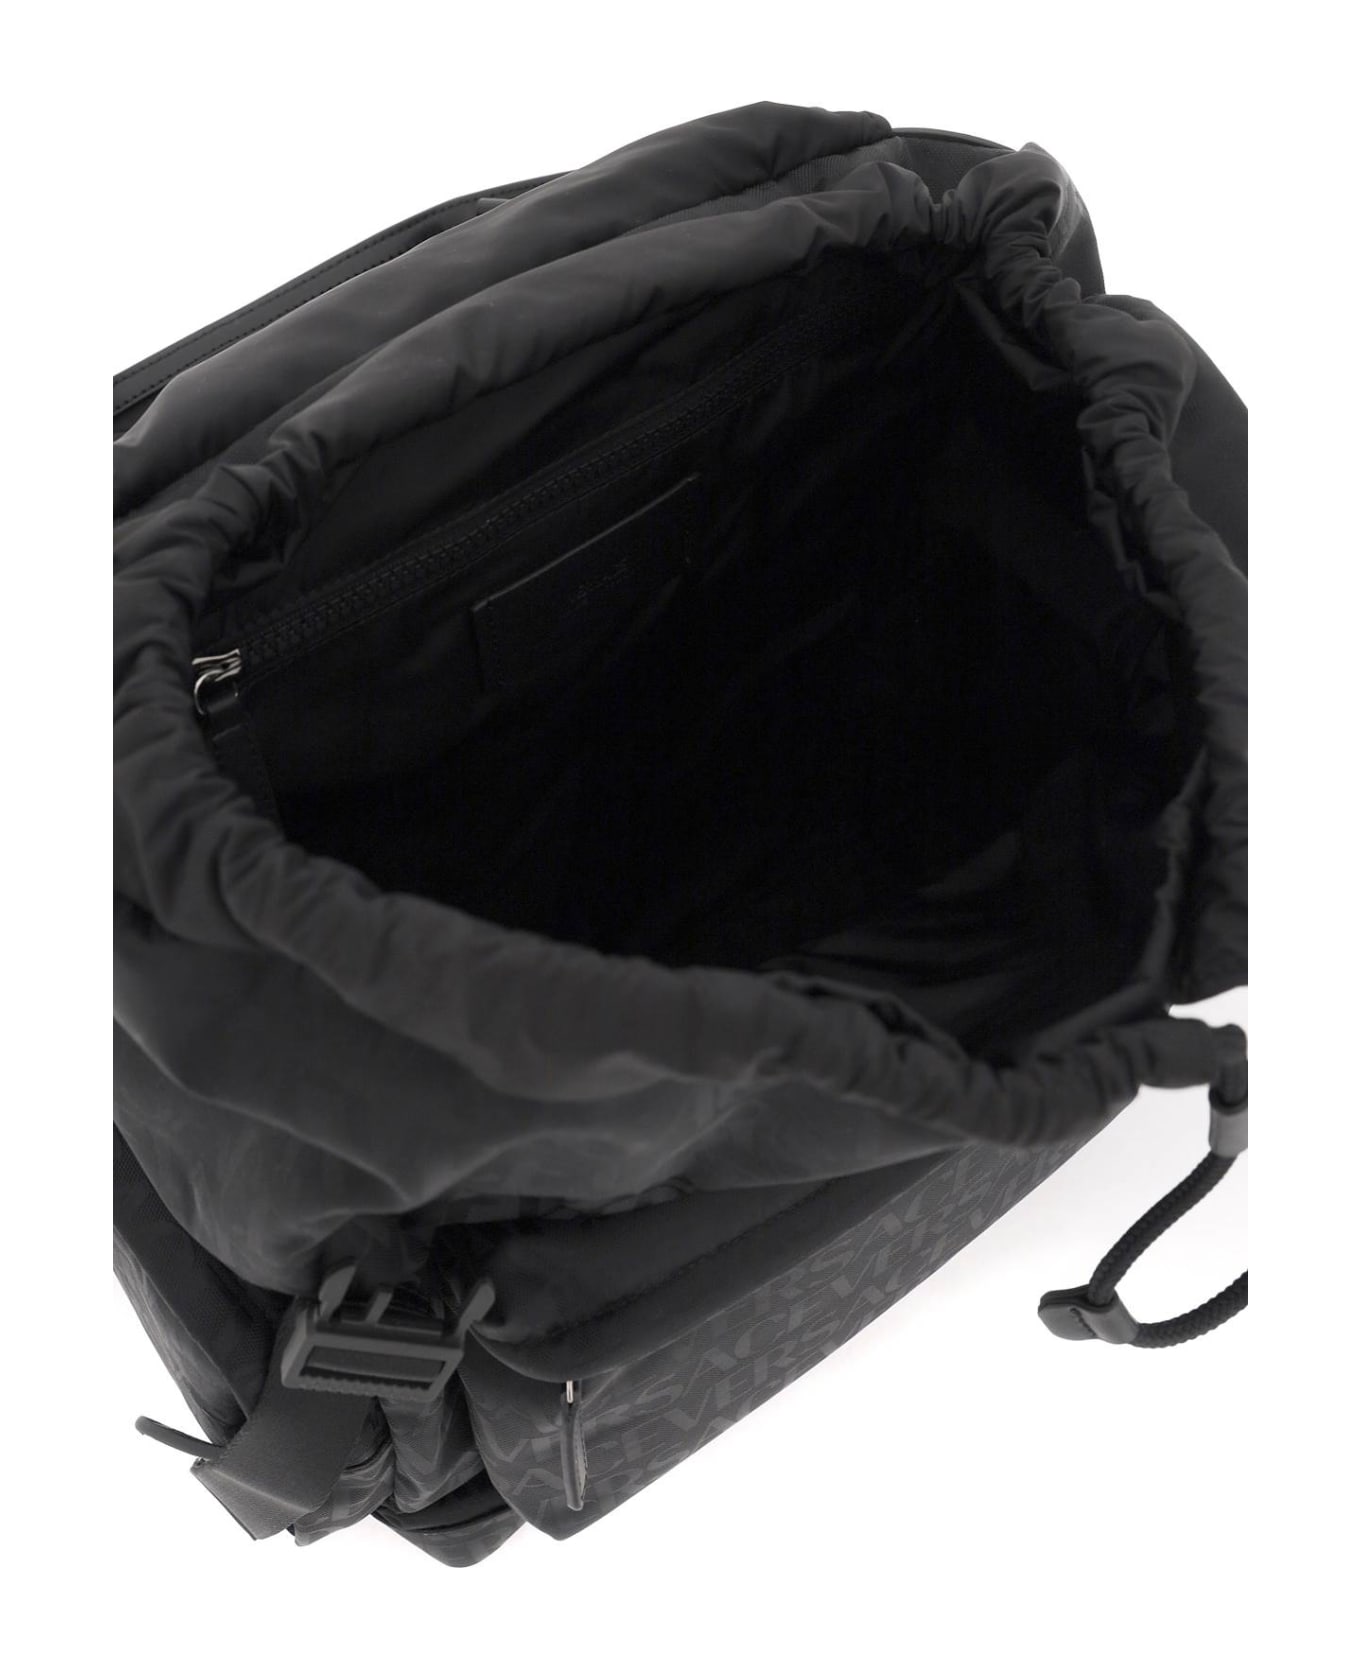 Versace Backpack - Nero-rutenio バックパック